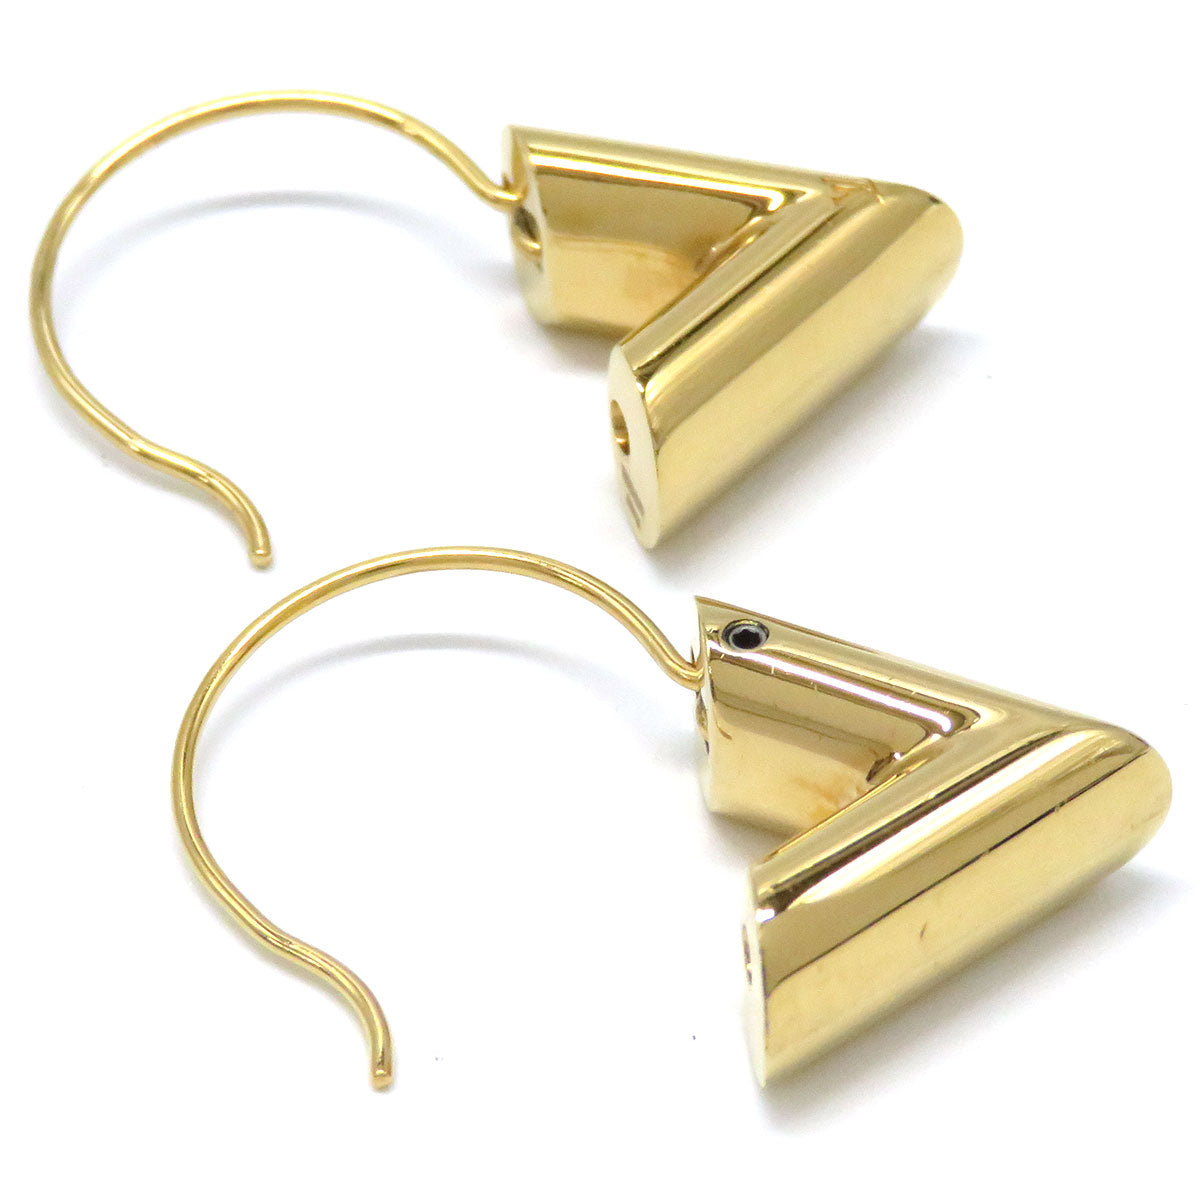 LOUIS VUITTON Louis Vuitton Essential V Hoop Earrings M61088 Metal